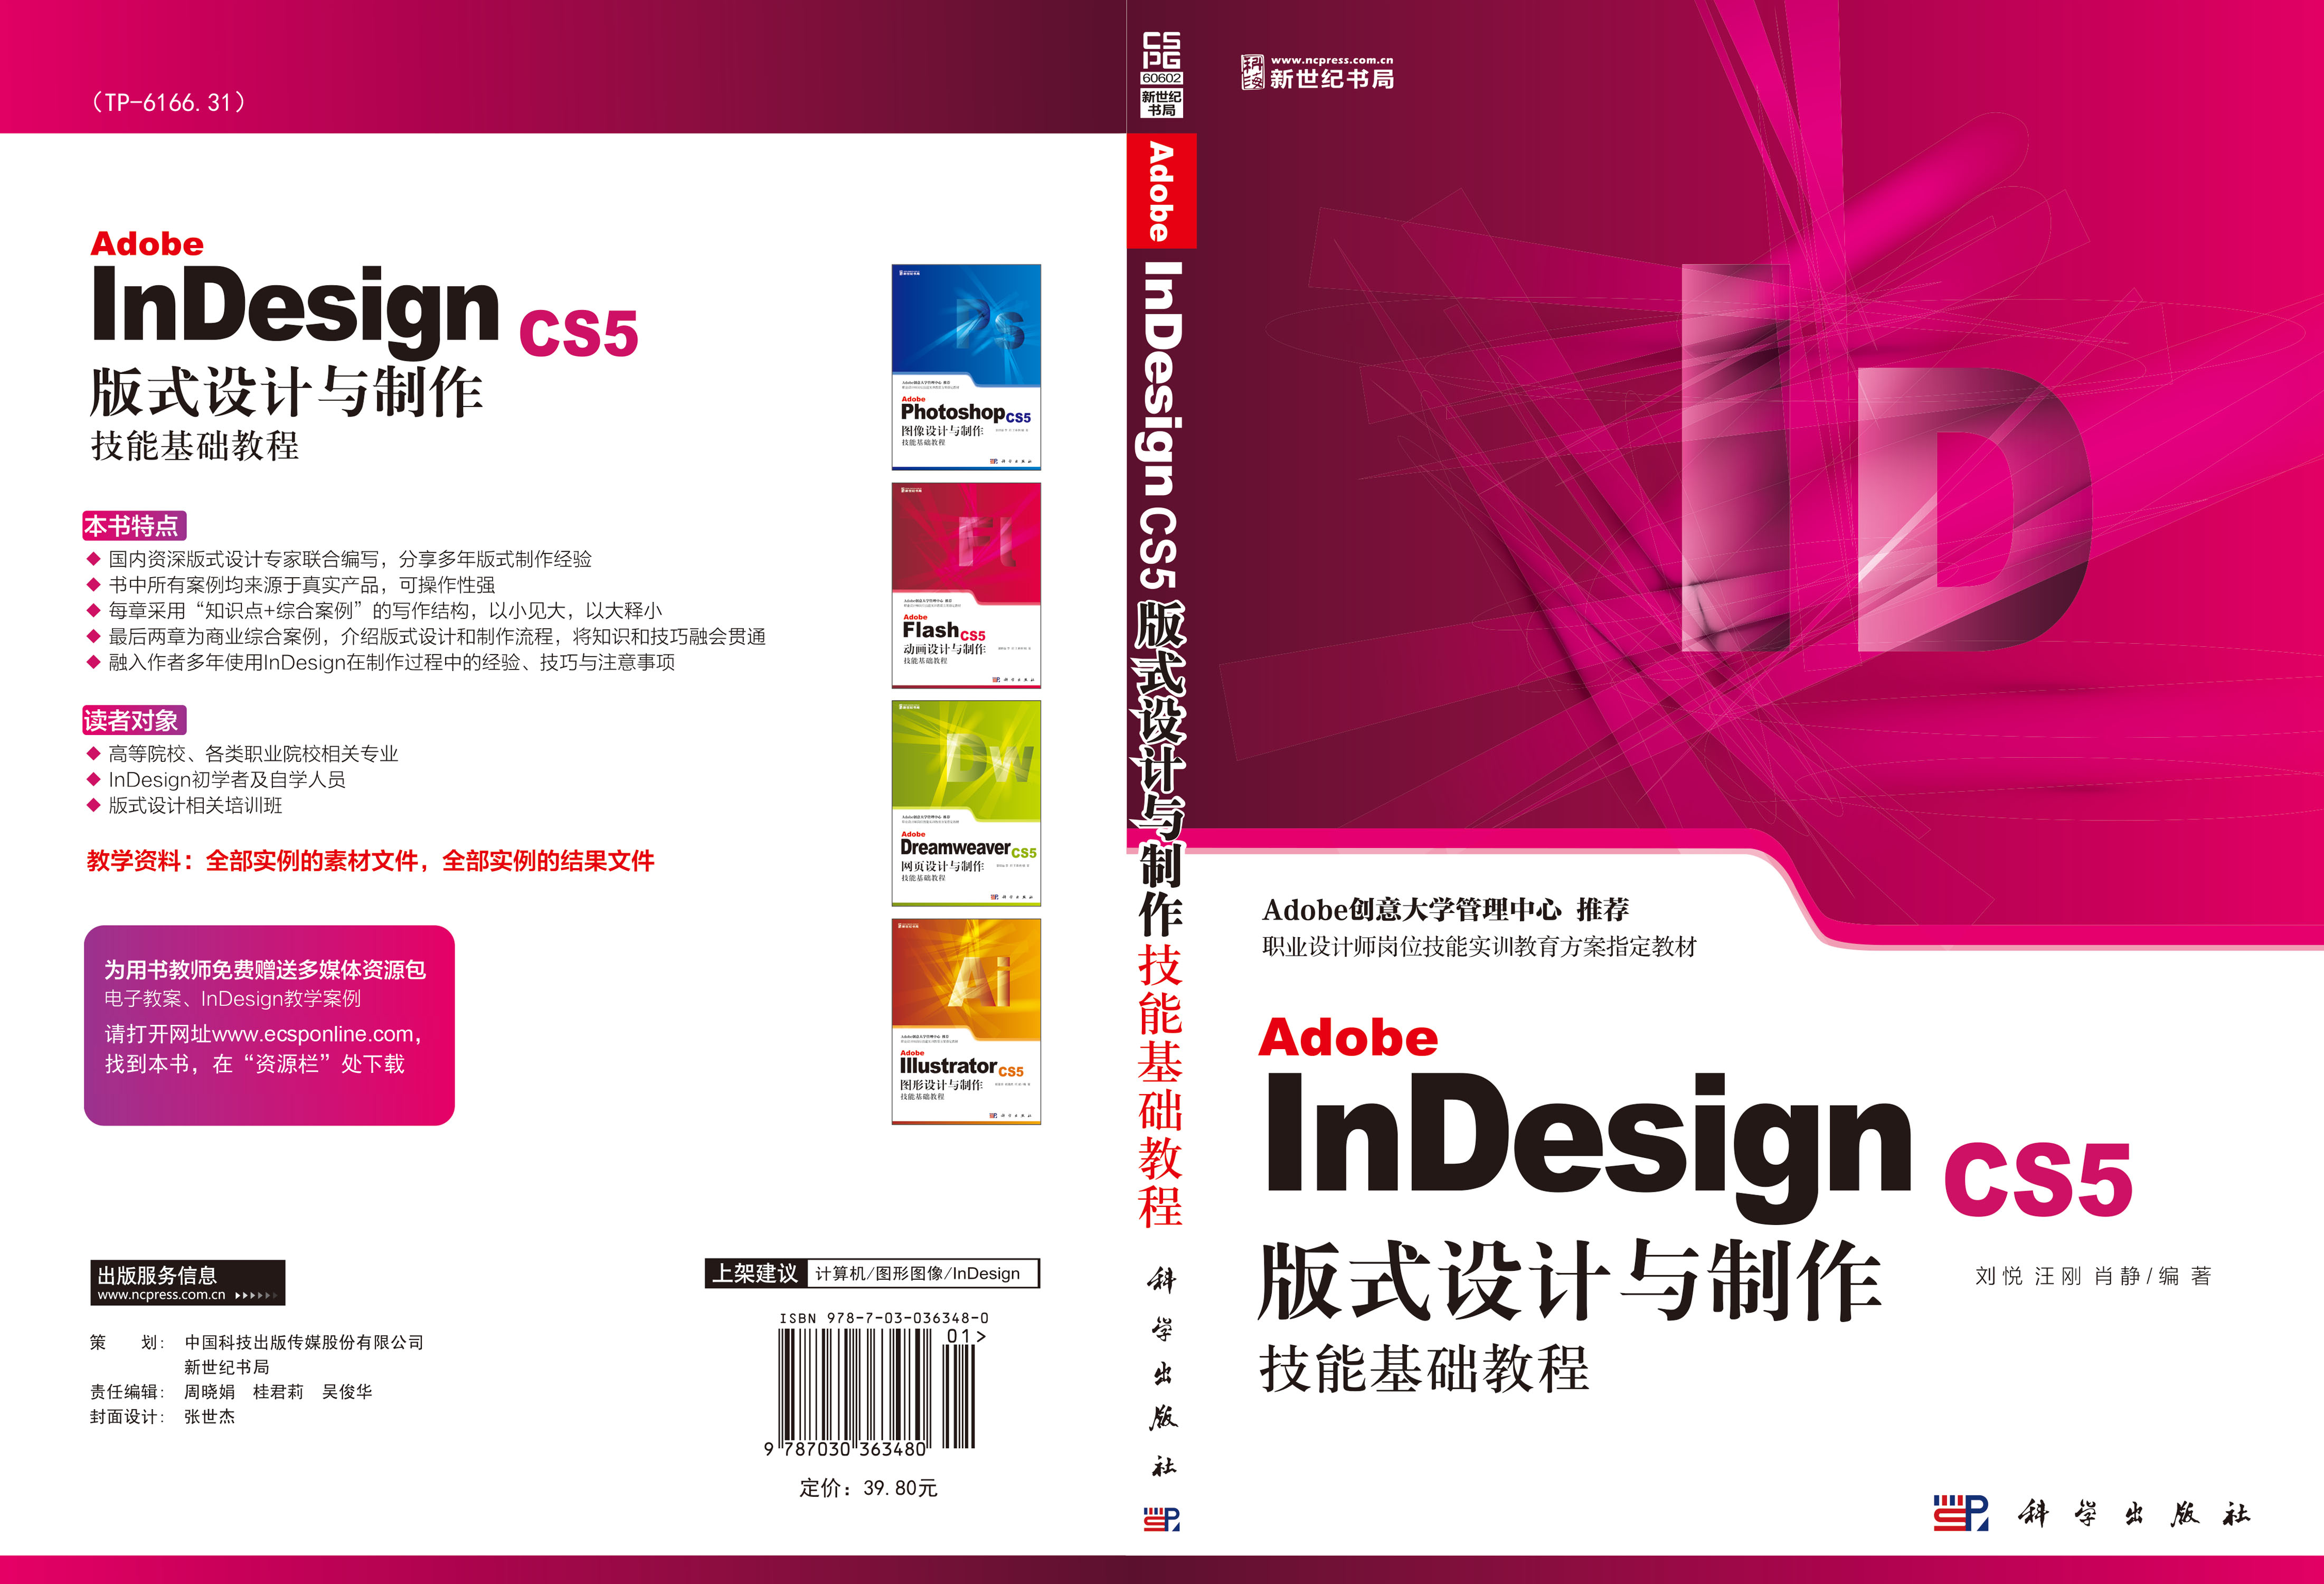 Adobe InDesign CS5版式设计与制作技能基础教程